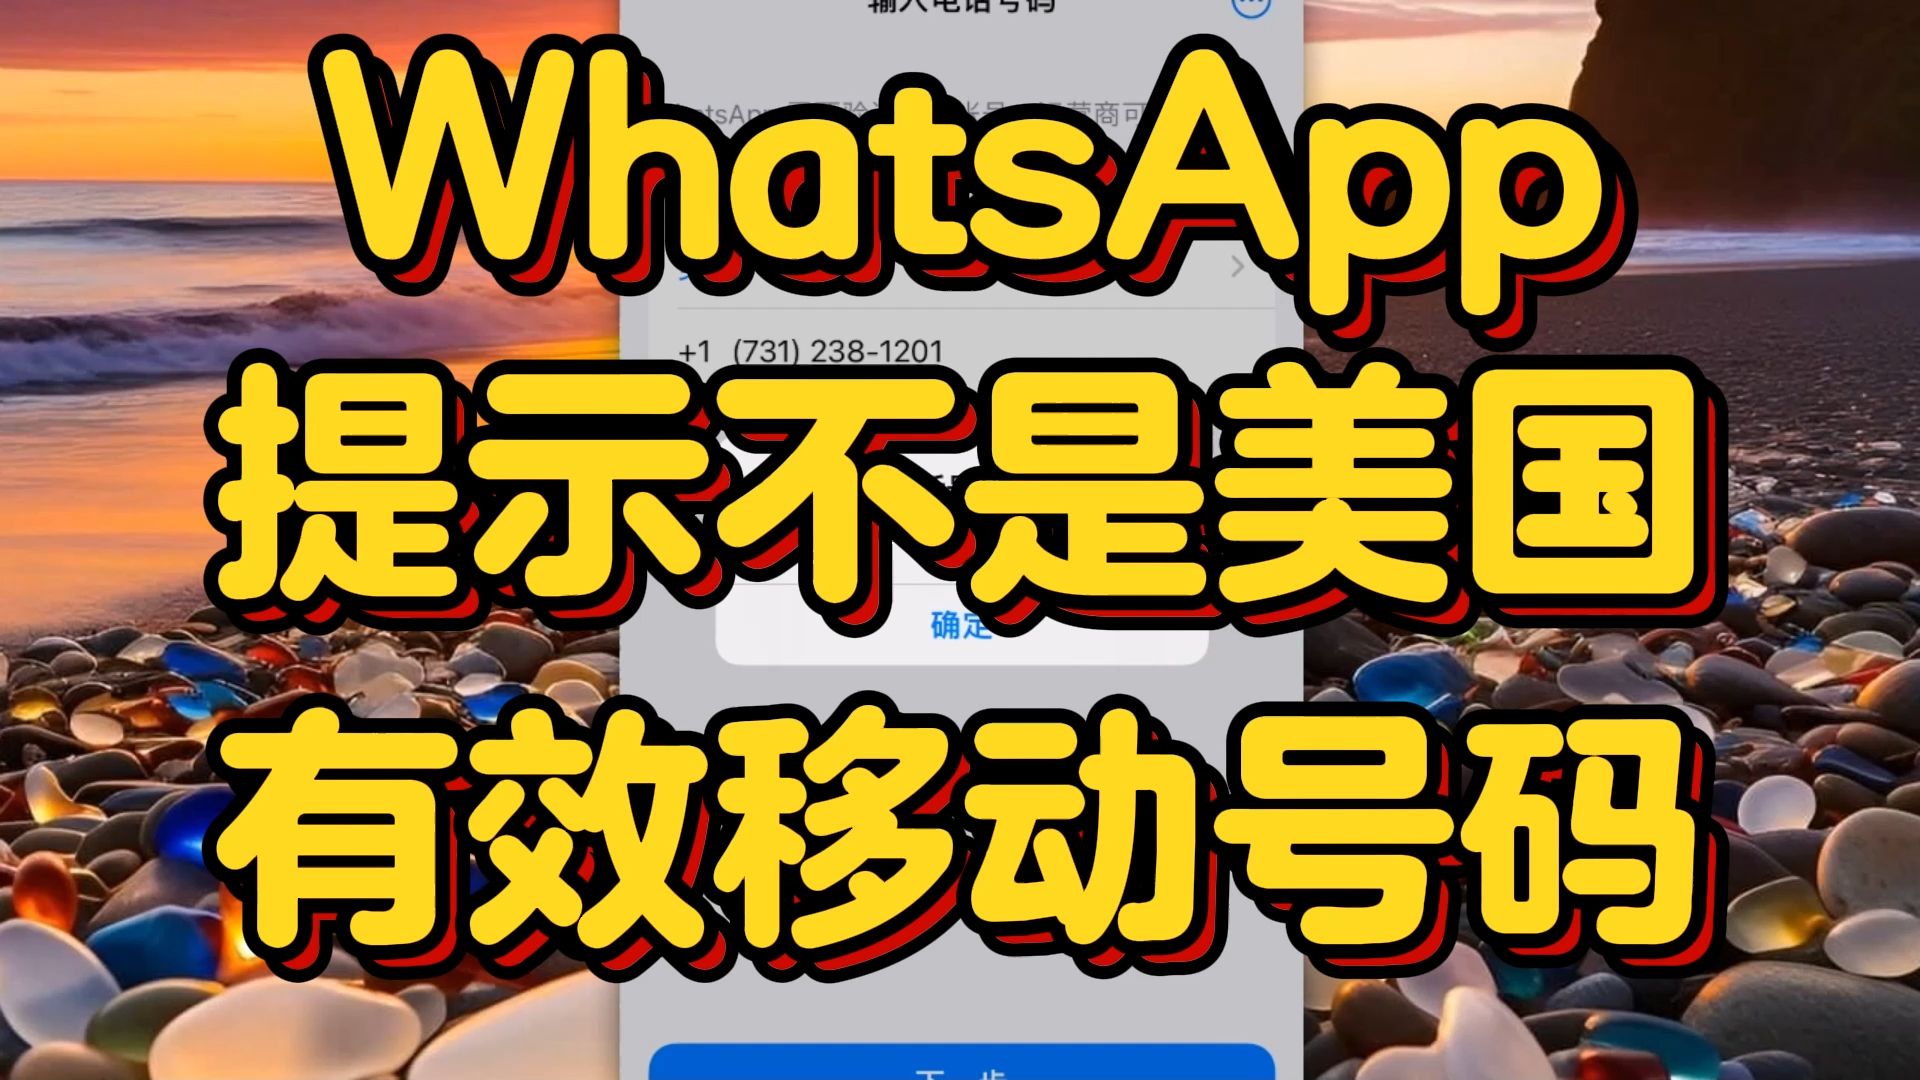 whatsapp官方下载中文版-WhatsApp 官方中文版